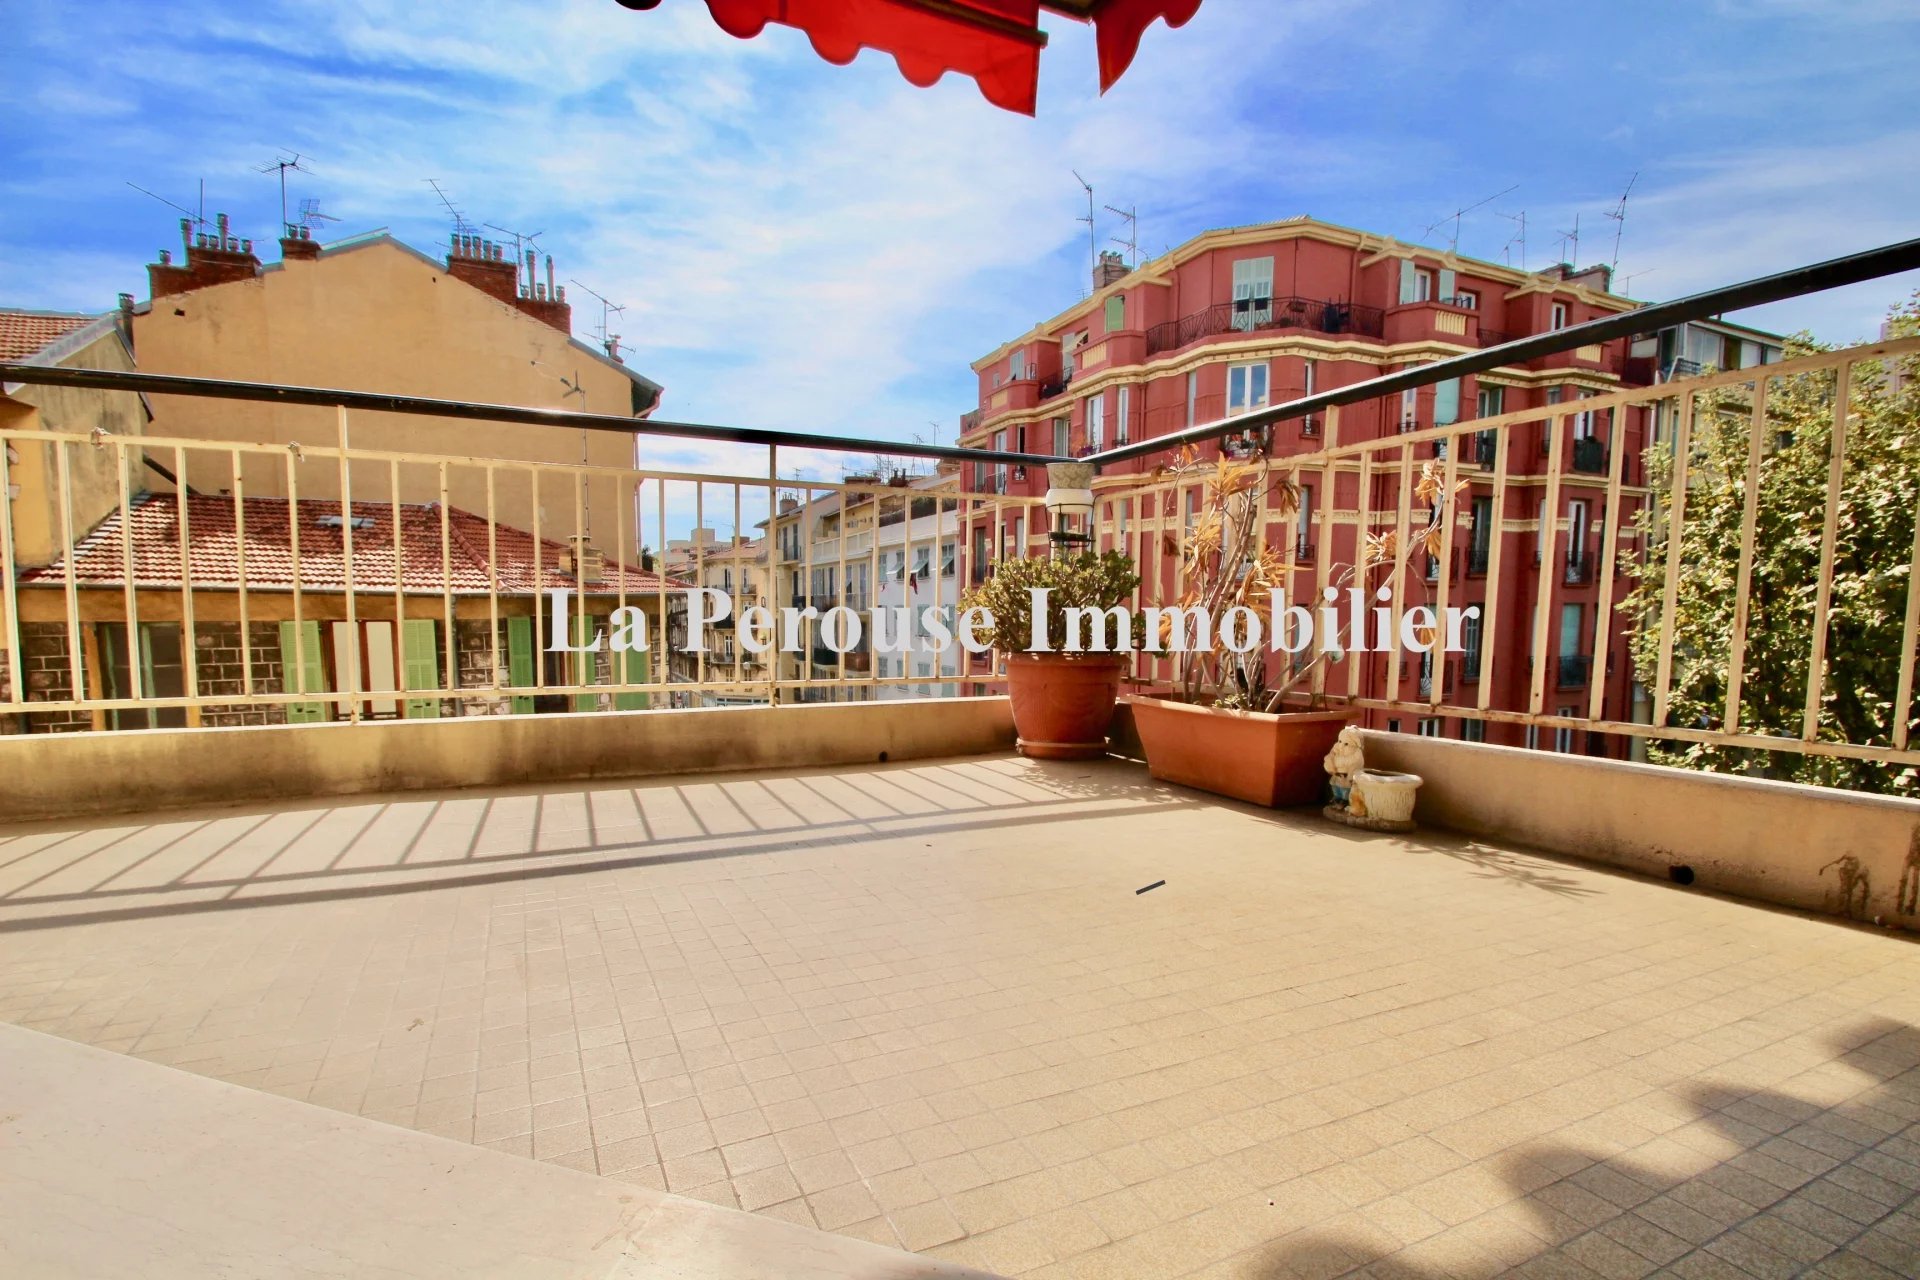 Vente Appartement 76m² 3 Pièces à Nice (06000) - La Perouse Immobilier